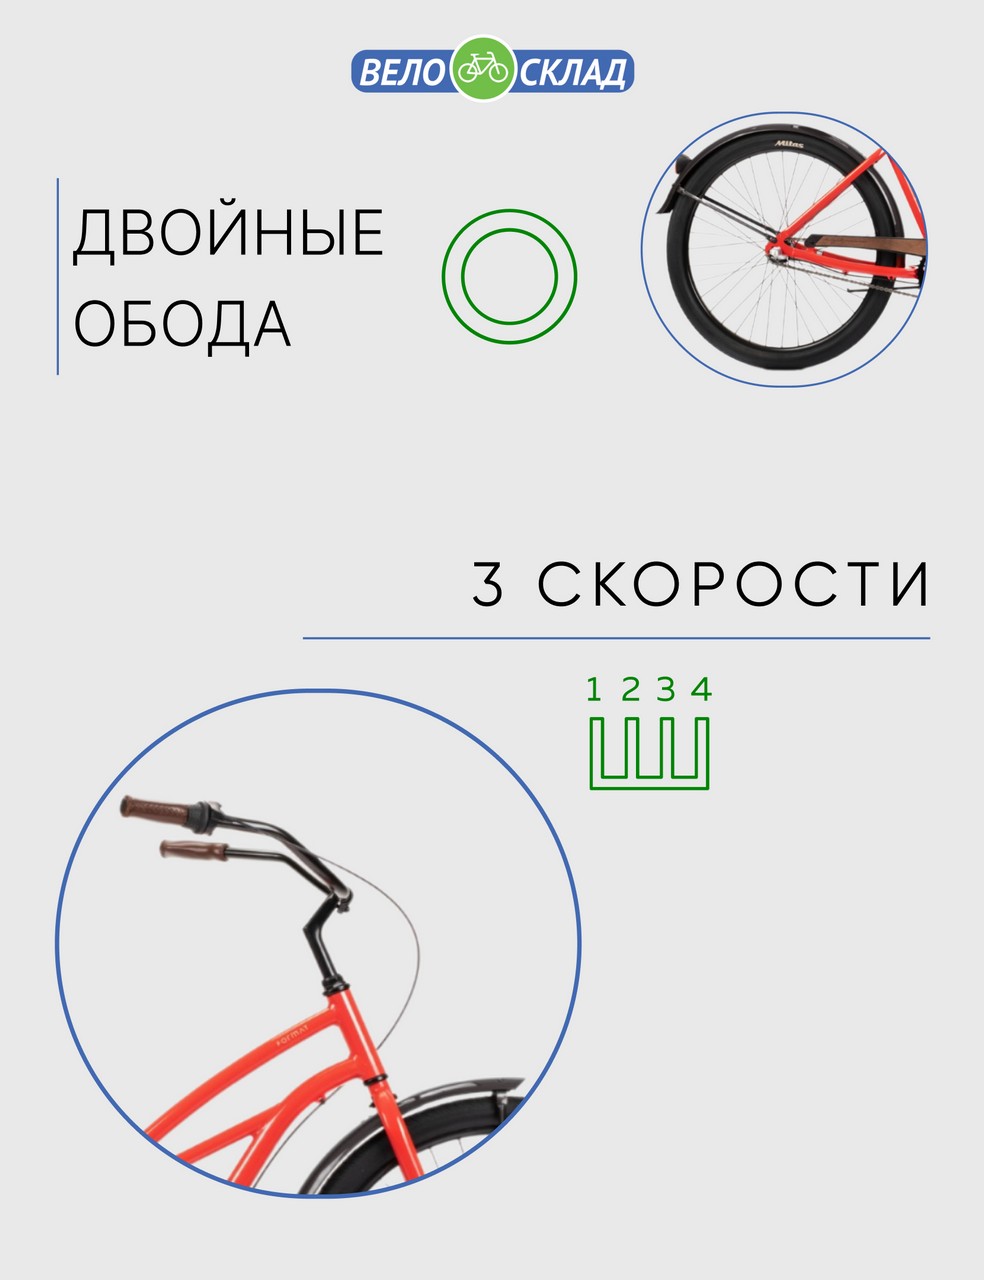 Женский велосипед Format 5522 26, год 2023, цвет Красный, ростовка 17